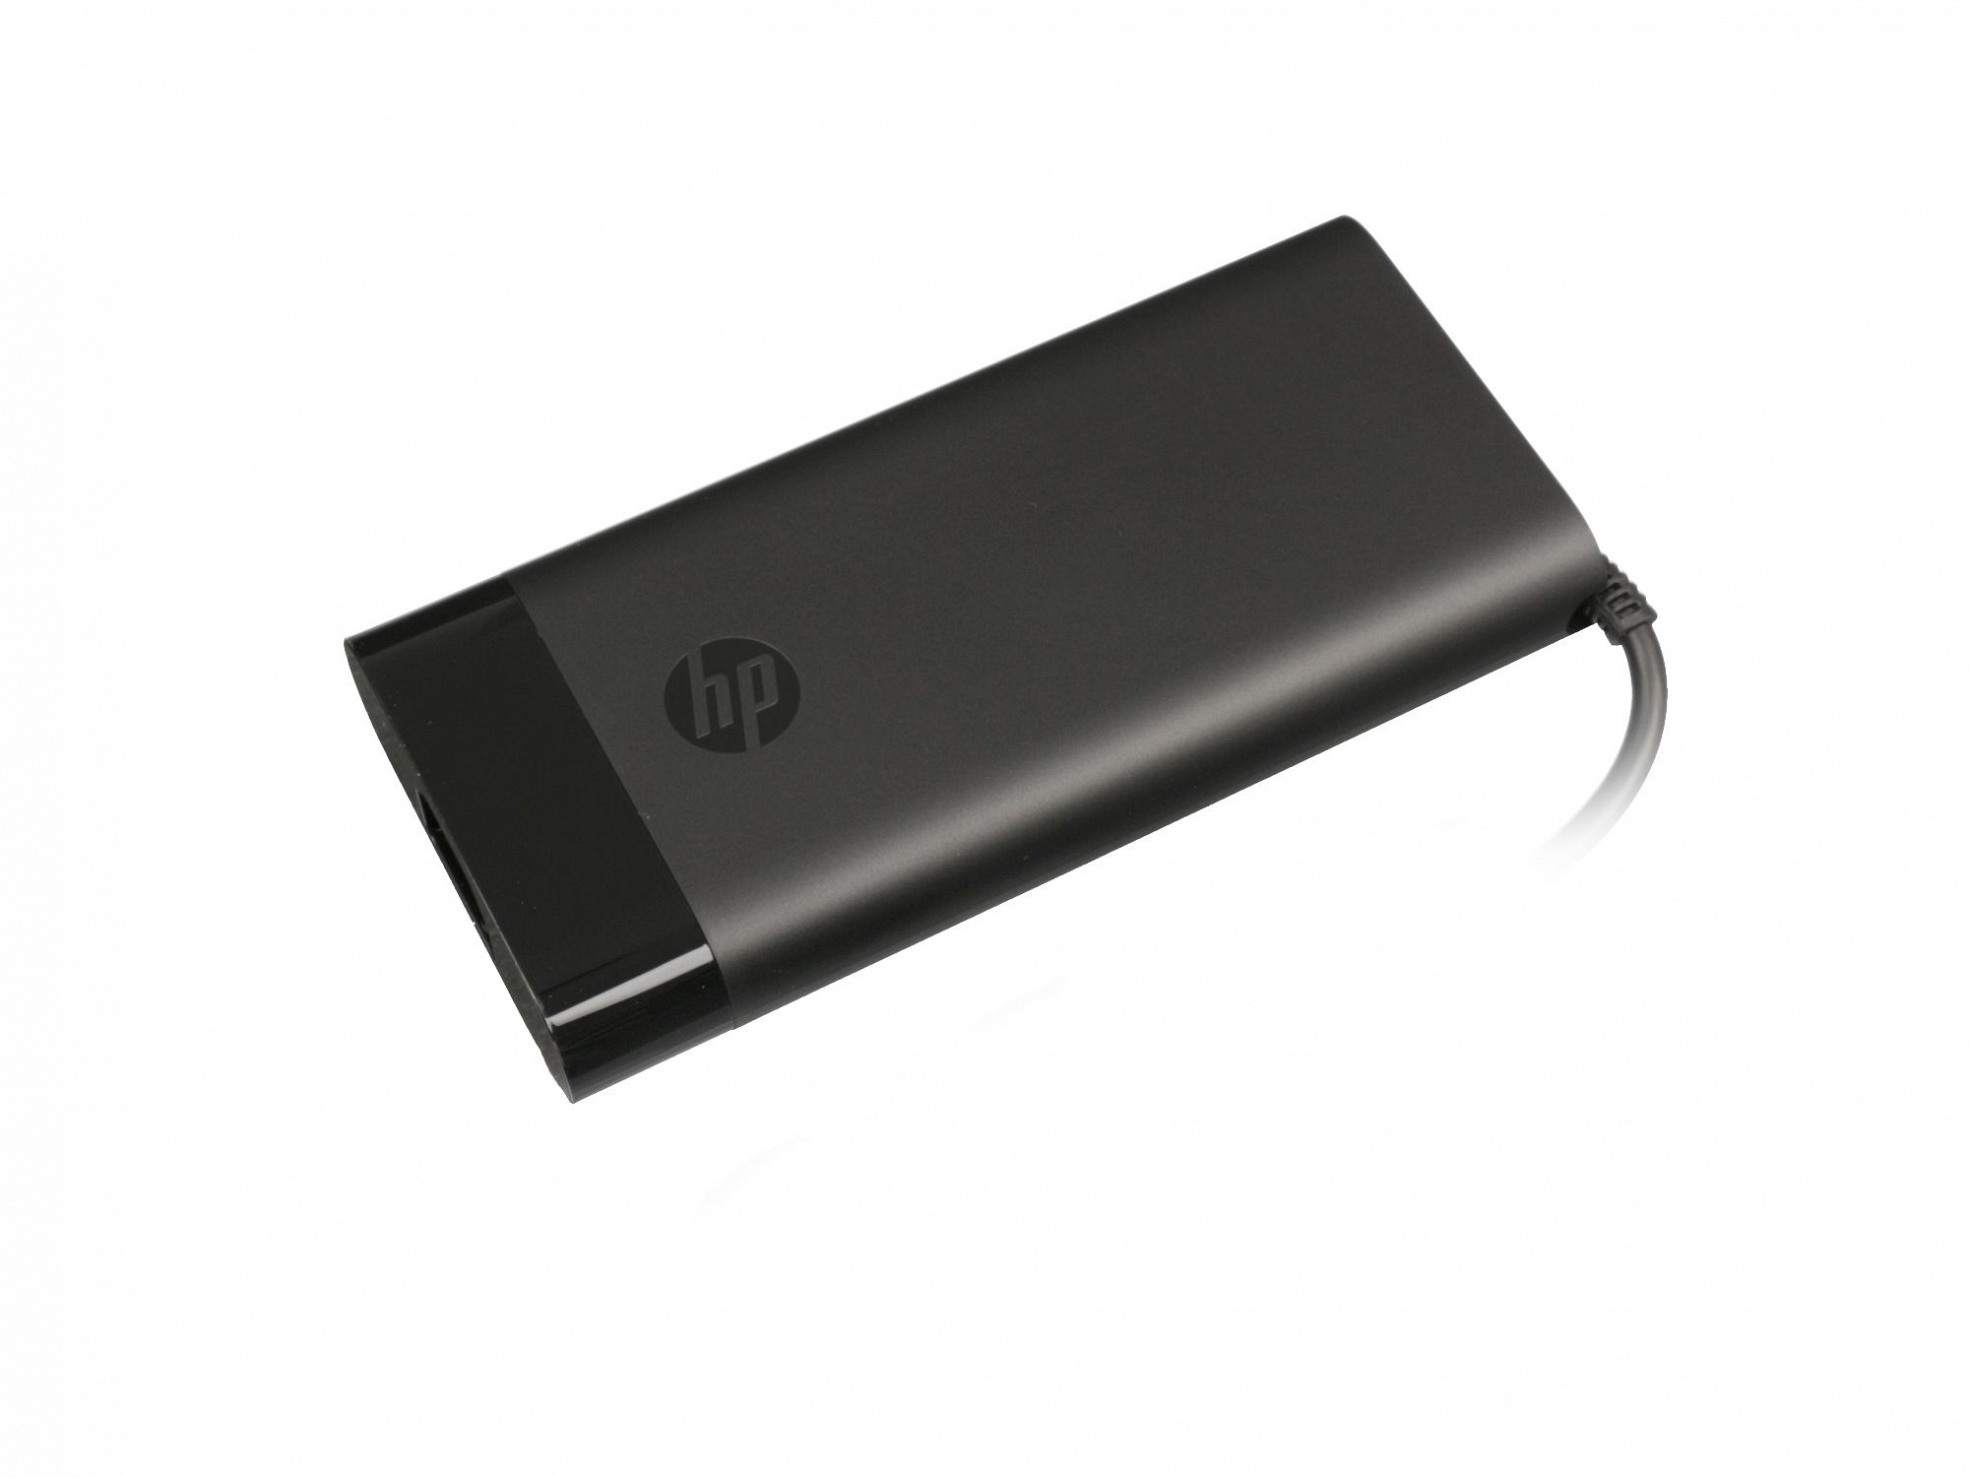 HP TPN-DA10 abgerundetes 200 Original Netzteil Watt